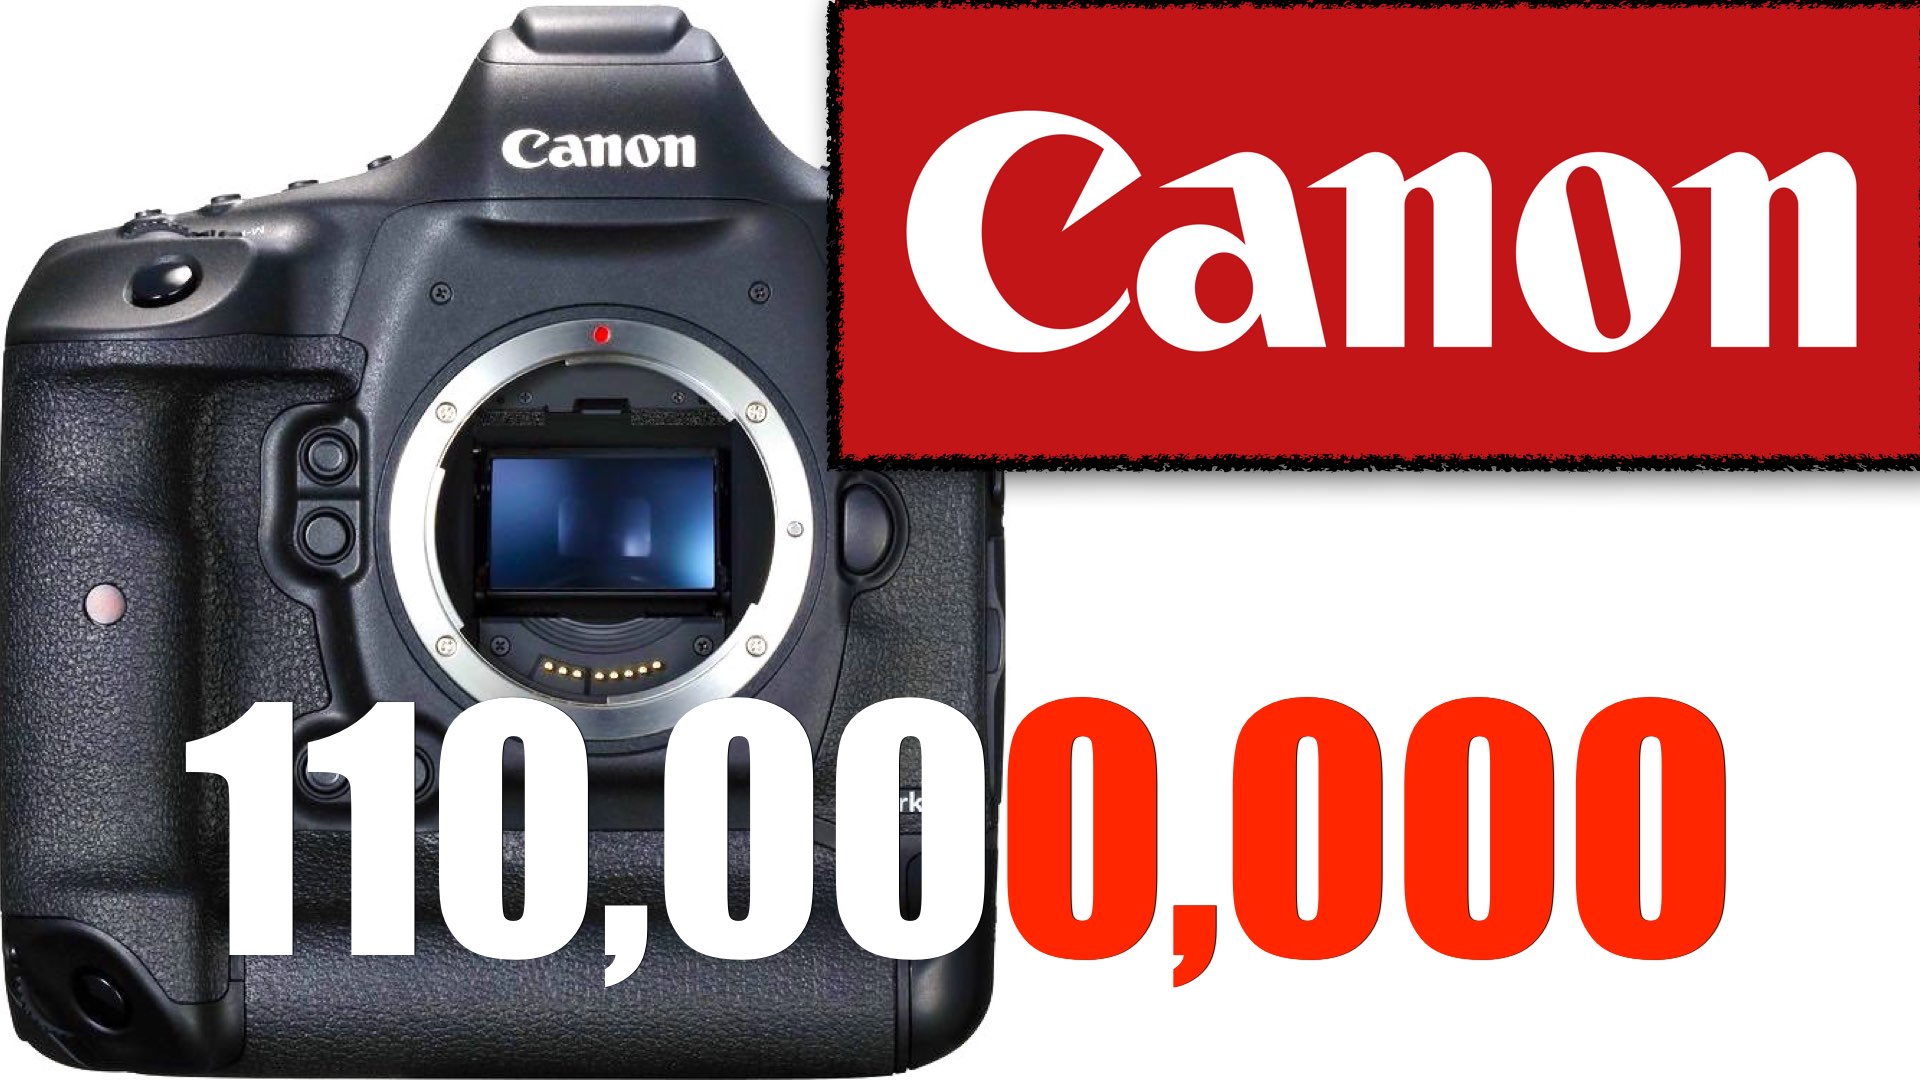 Canon has Produced 110,000,000 EOS Cameras